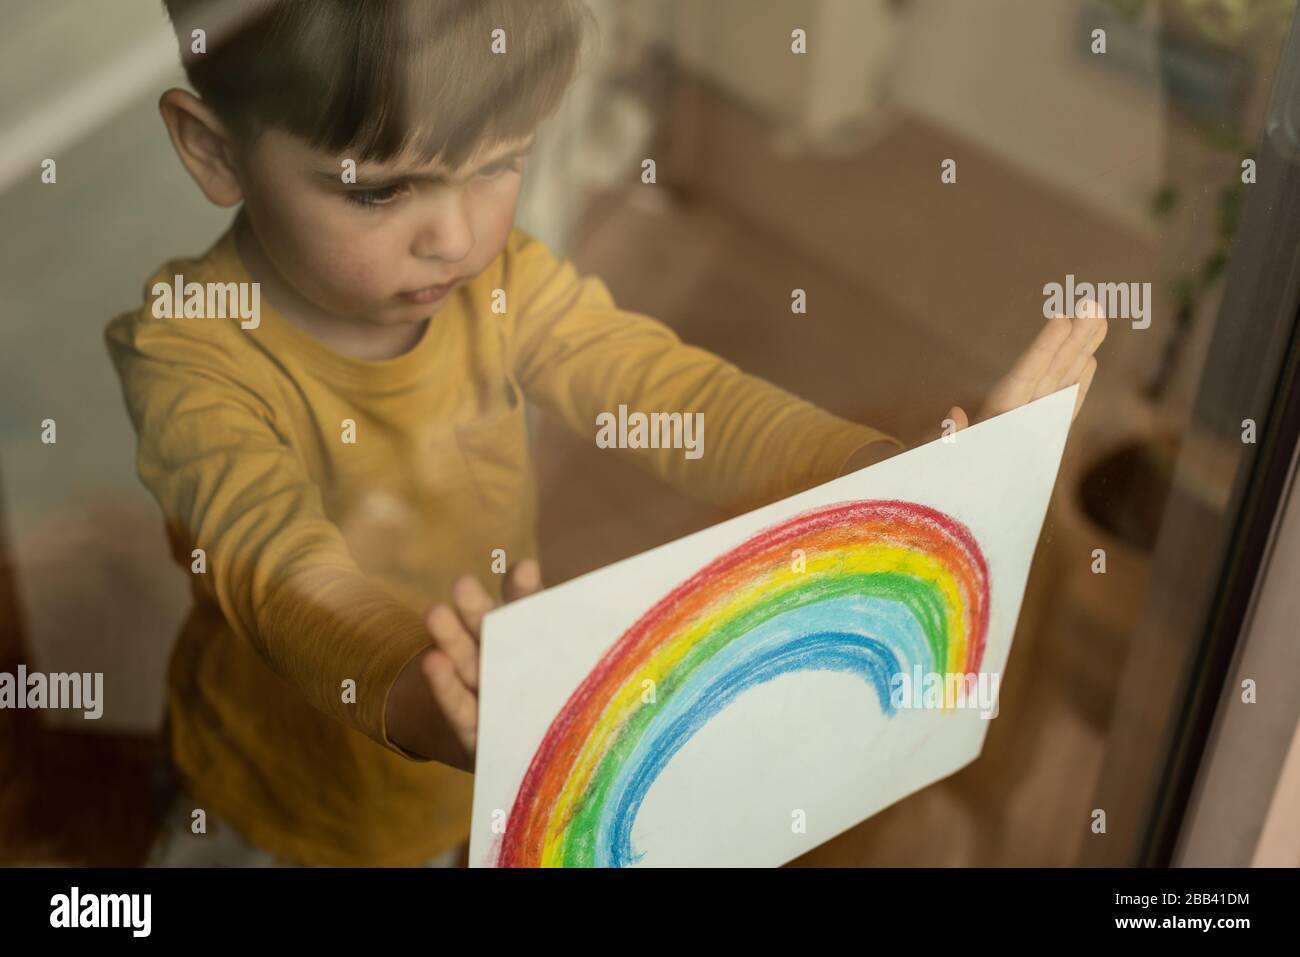 Inspirierendes kleines Kind, das eine Zeichnung eines Regenbogens durch das Fenster hält Stockfoto